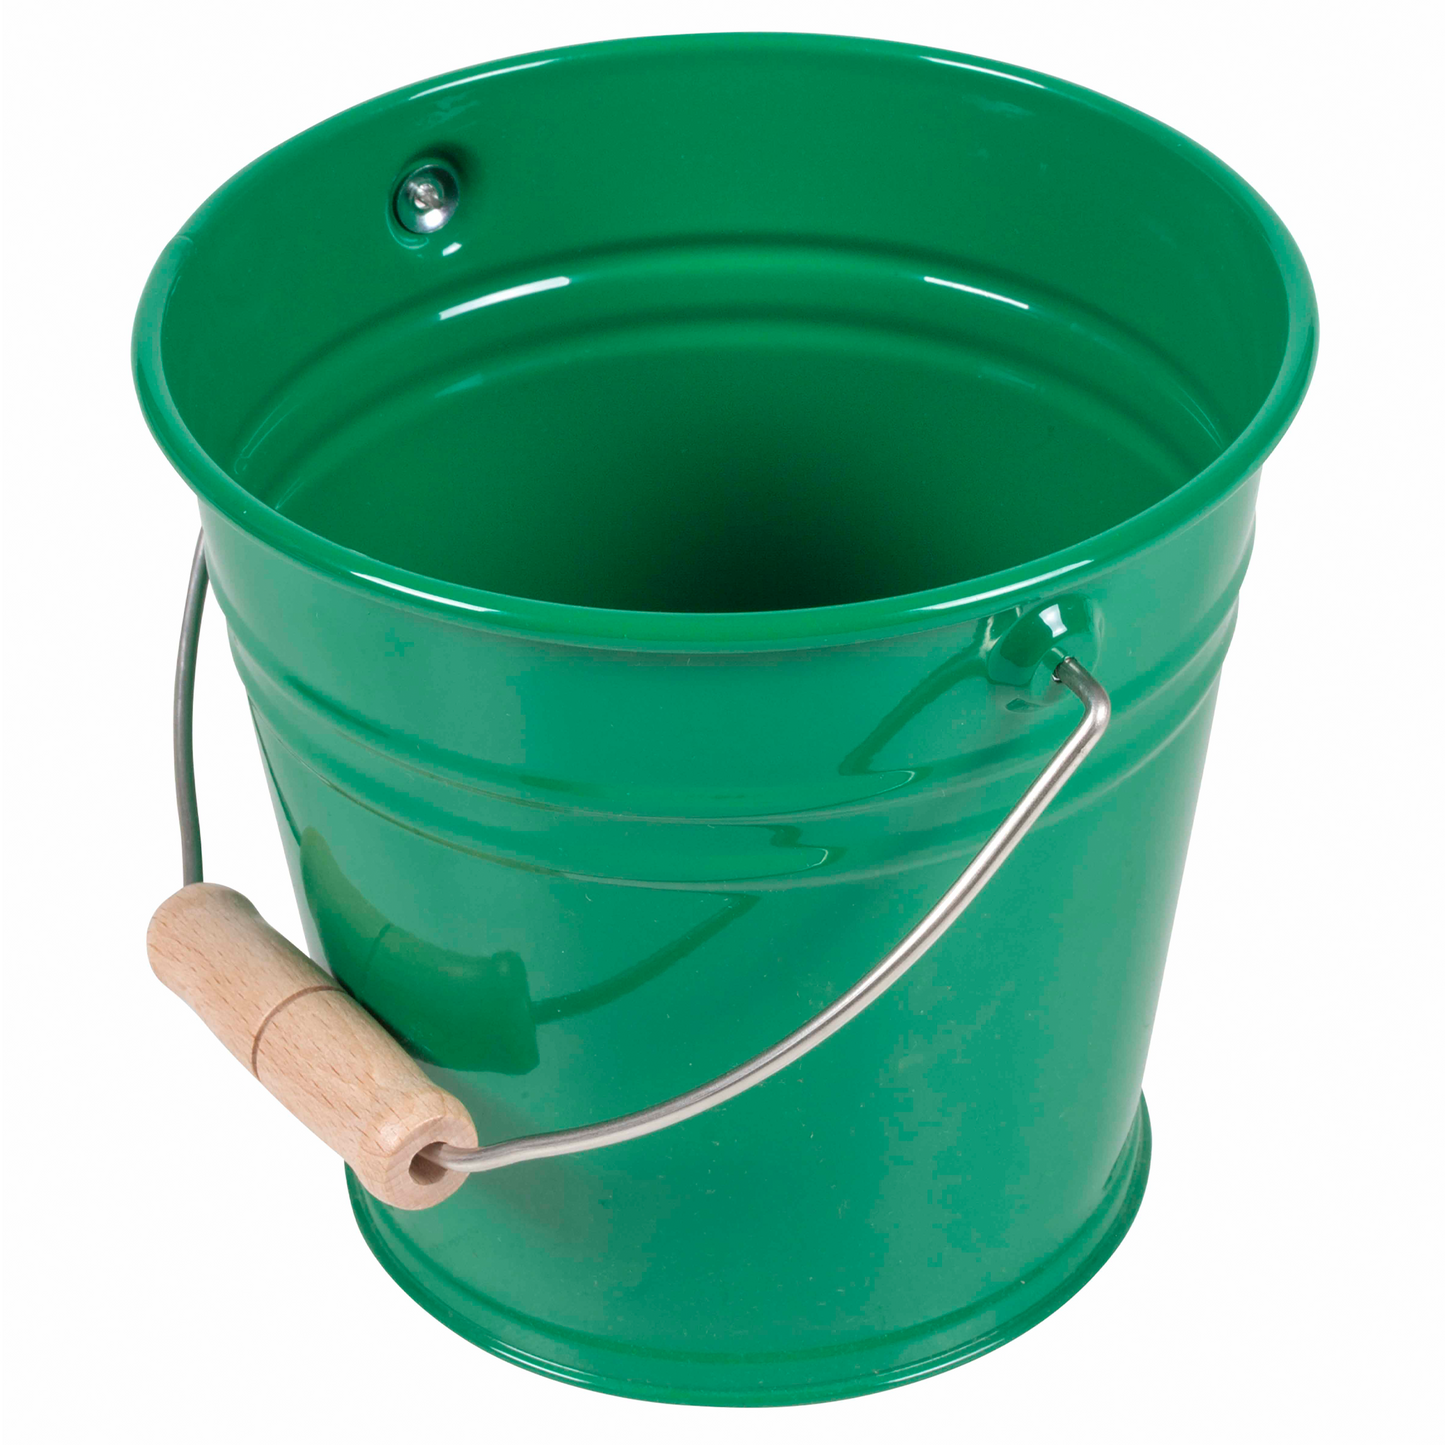 Small green bucket - Nienhuis AMI